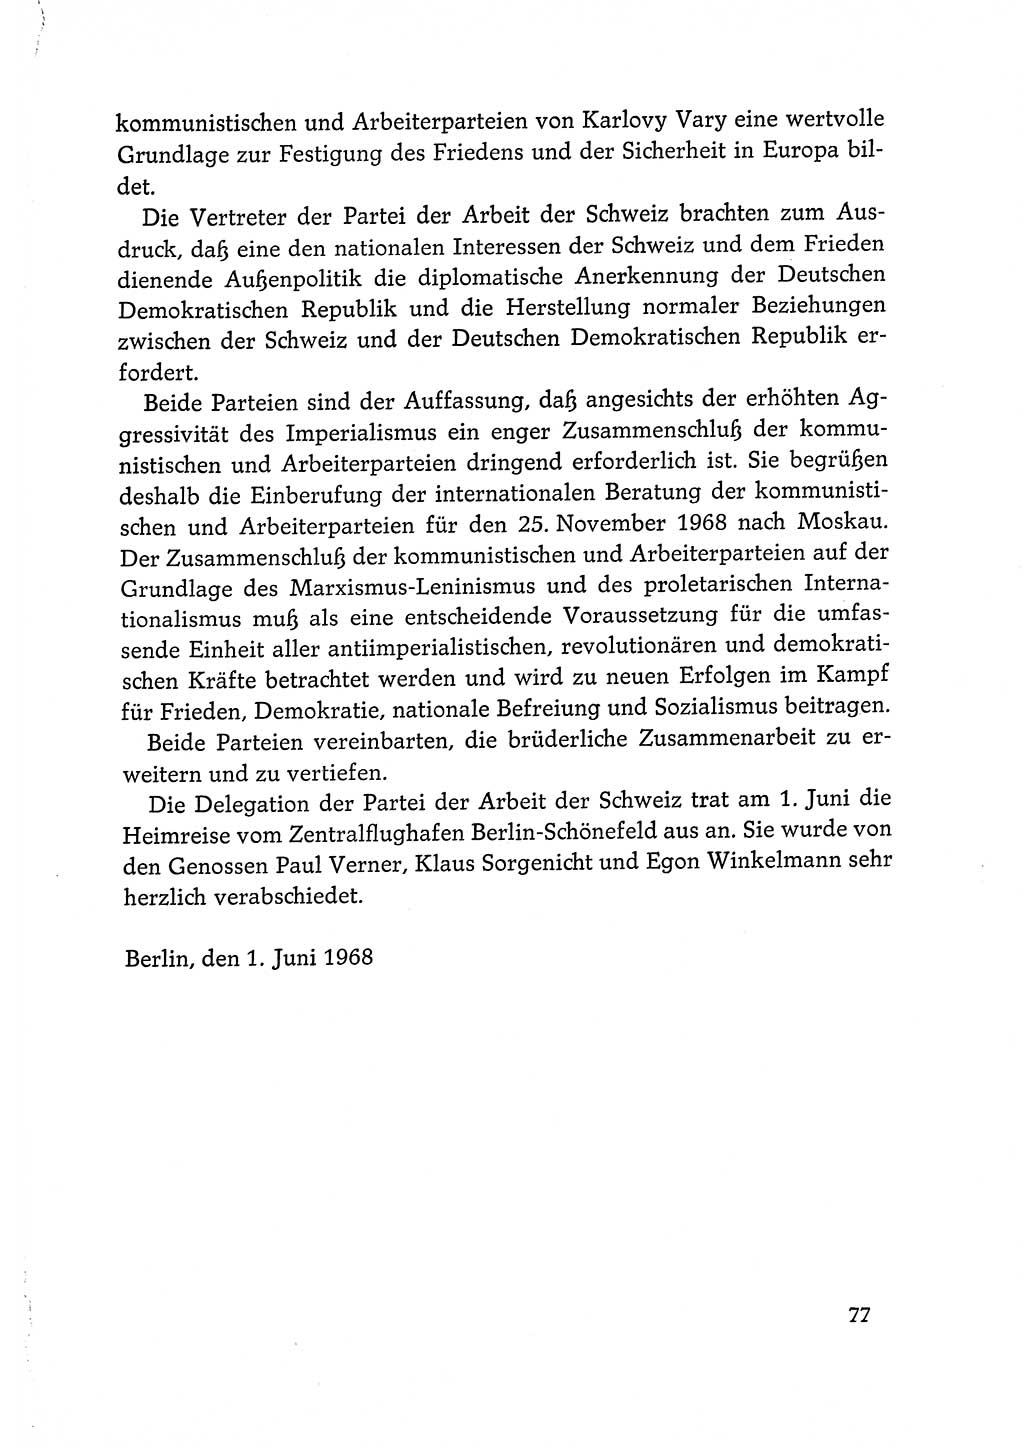 Dokumente der Sozialistischen Einheitspartei Deutschlands (SED) [Deutsche Demokratische Republik (DDR)] 1968-1969, Seite 77 (Dok. SED DDR 1968-1969, S. 77)